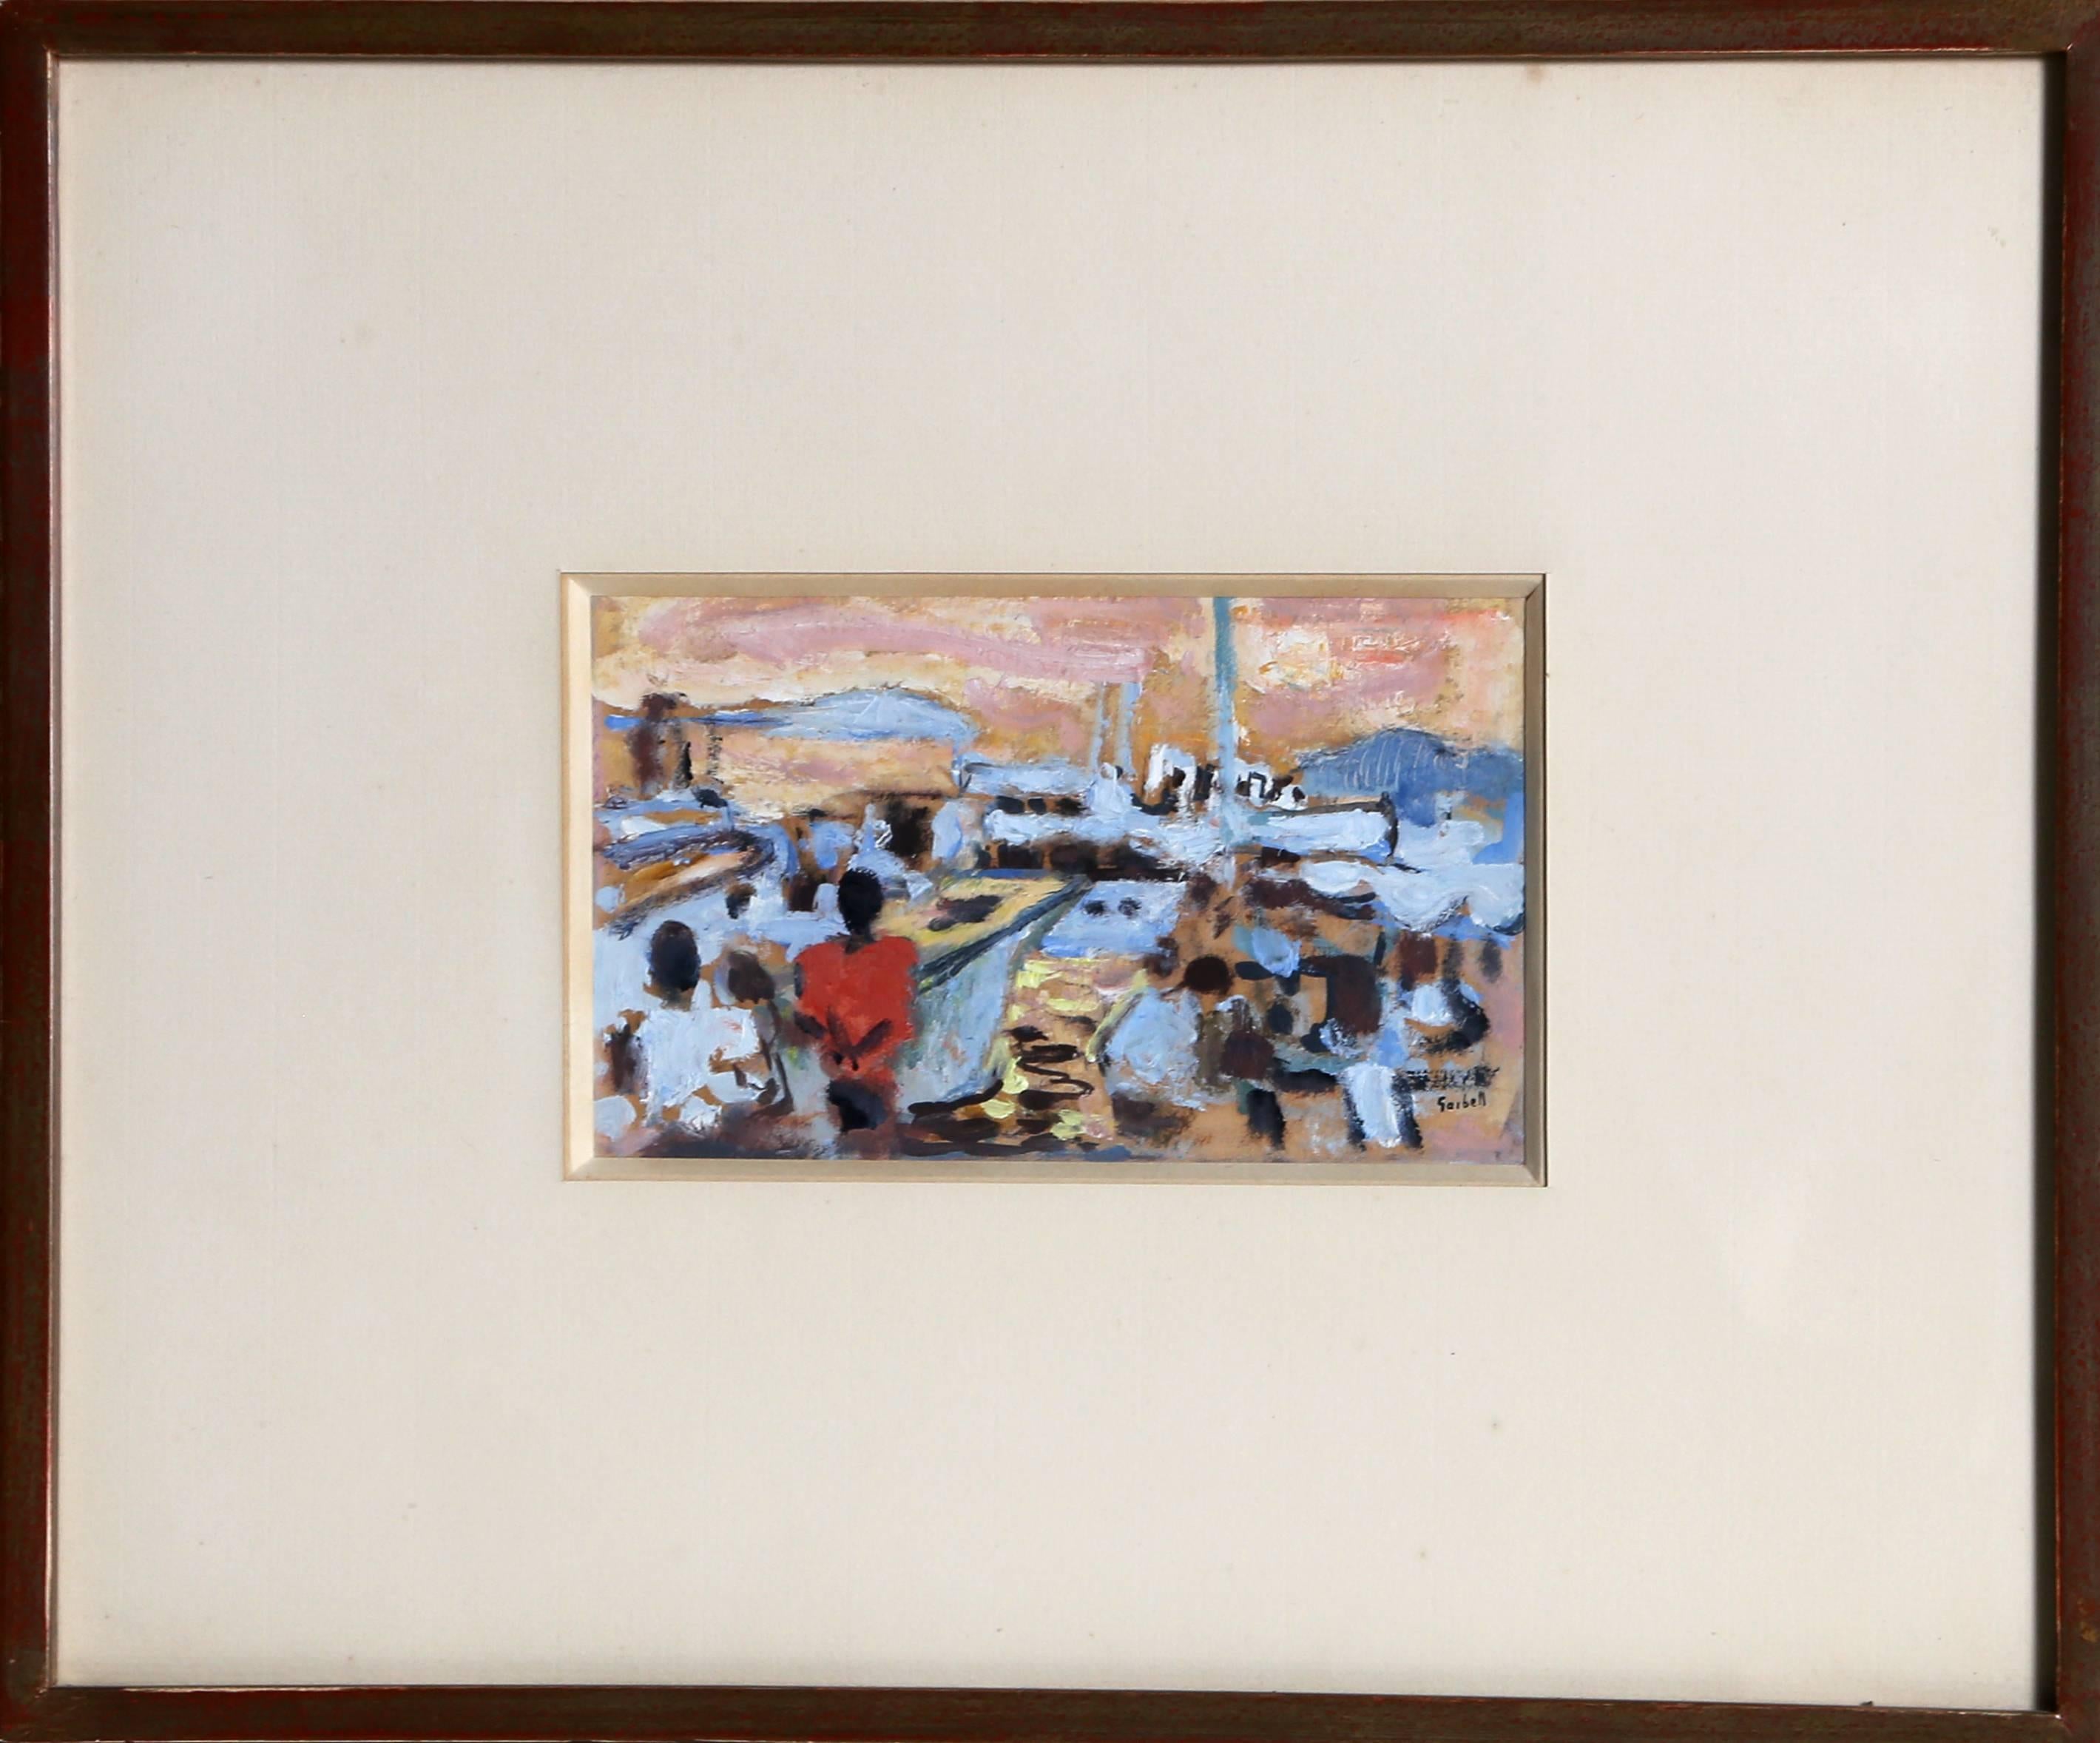 St. Maxime, signiertes Gouache-Gemälde von Alexandre Sacha Garbell aus den 1950er Jahren